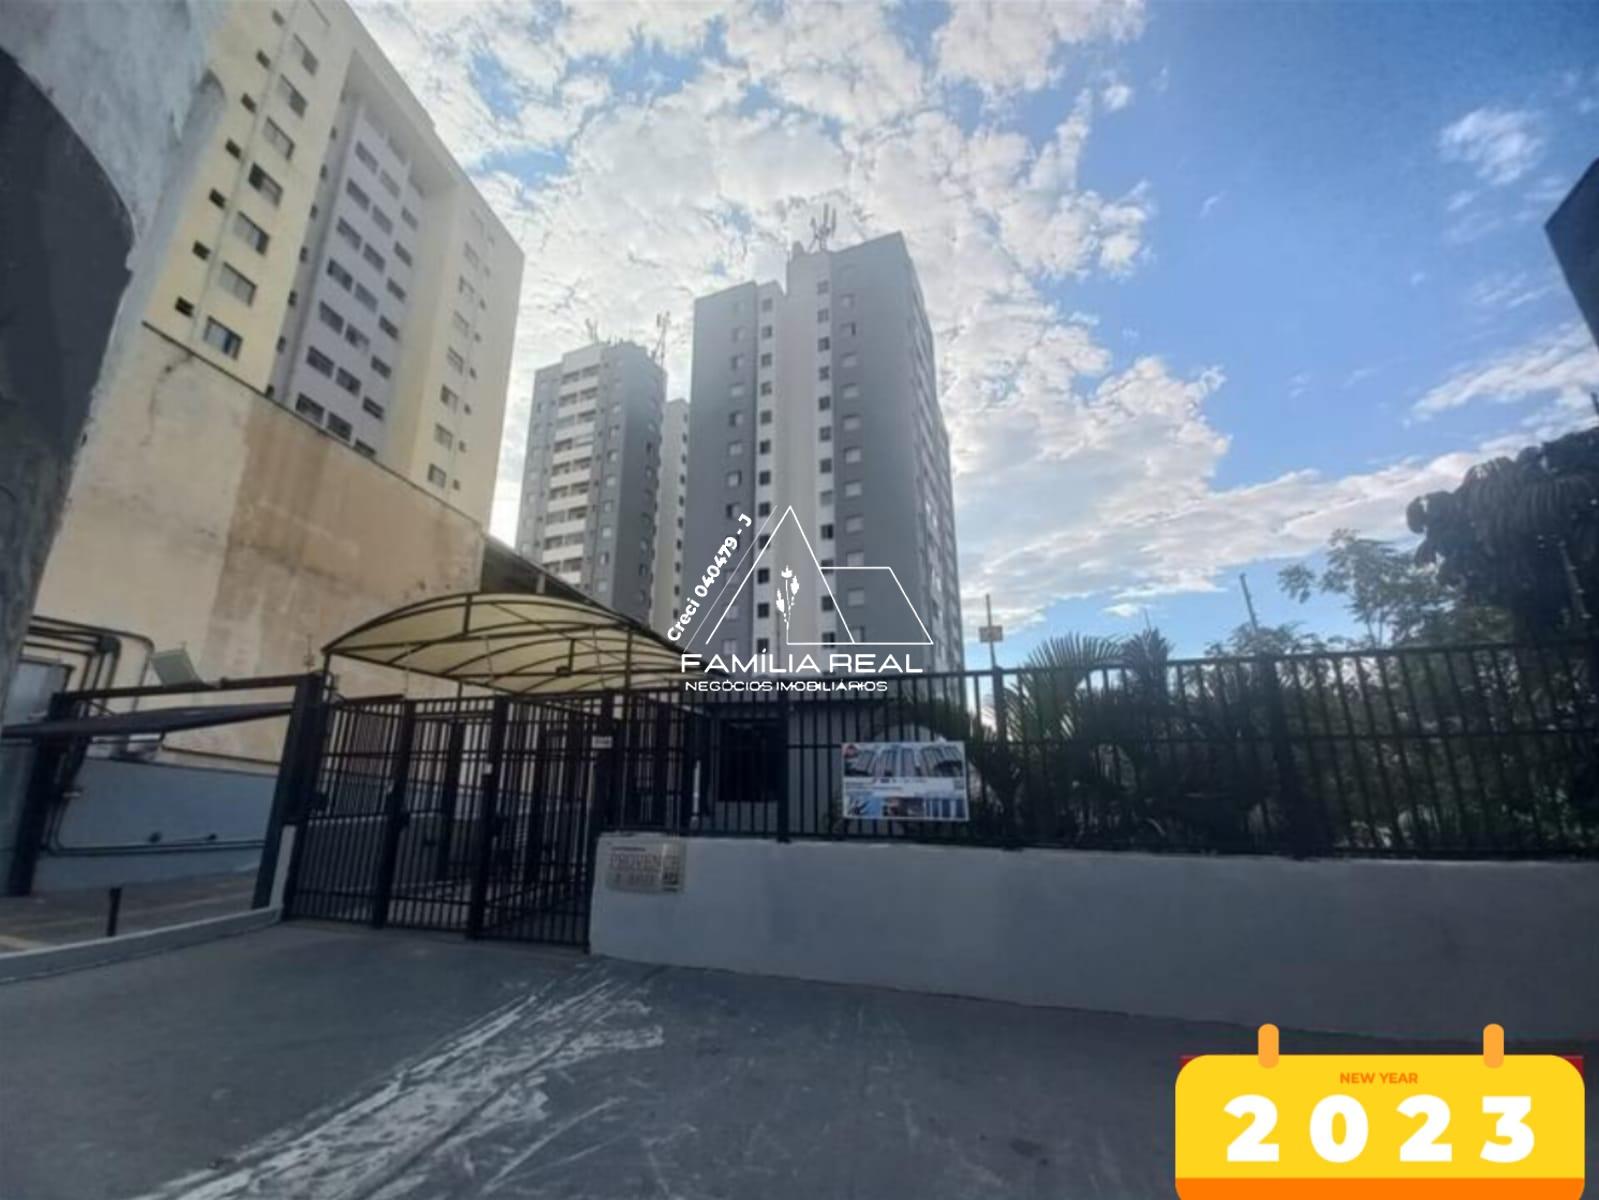 Apartamento com 2 Dormitórios, 1 vaga à venda, Vila Marieta, S...